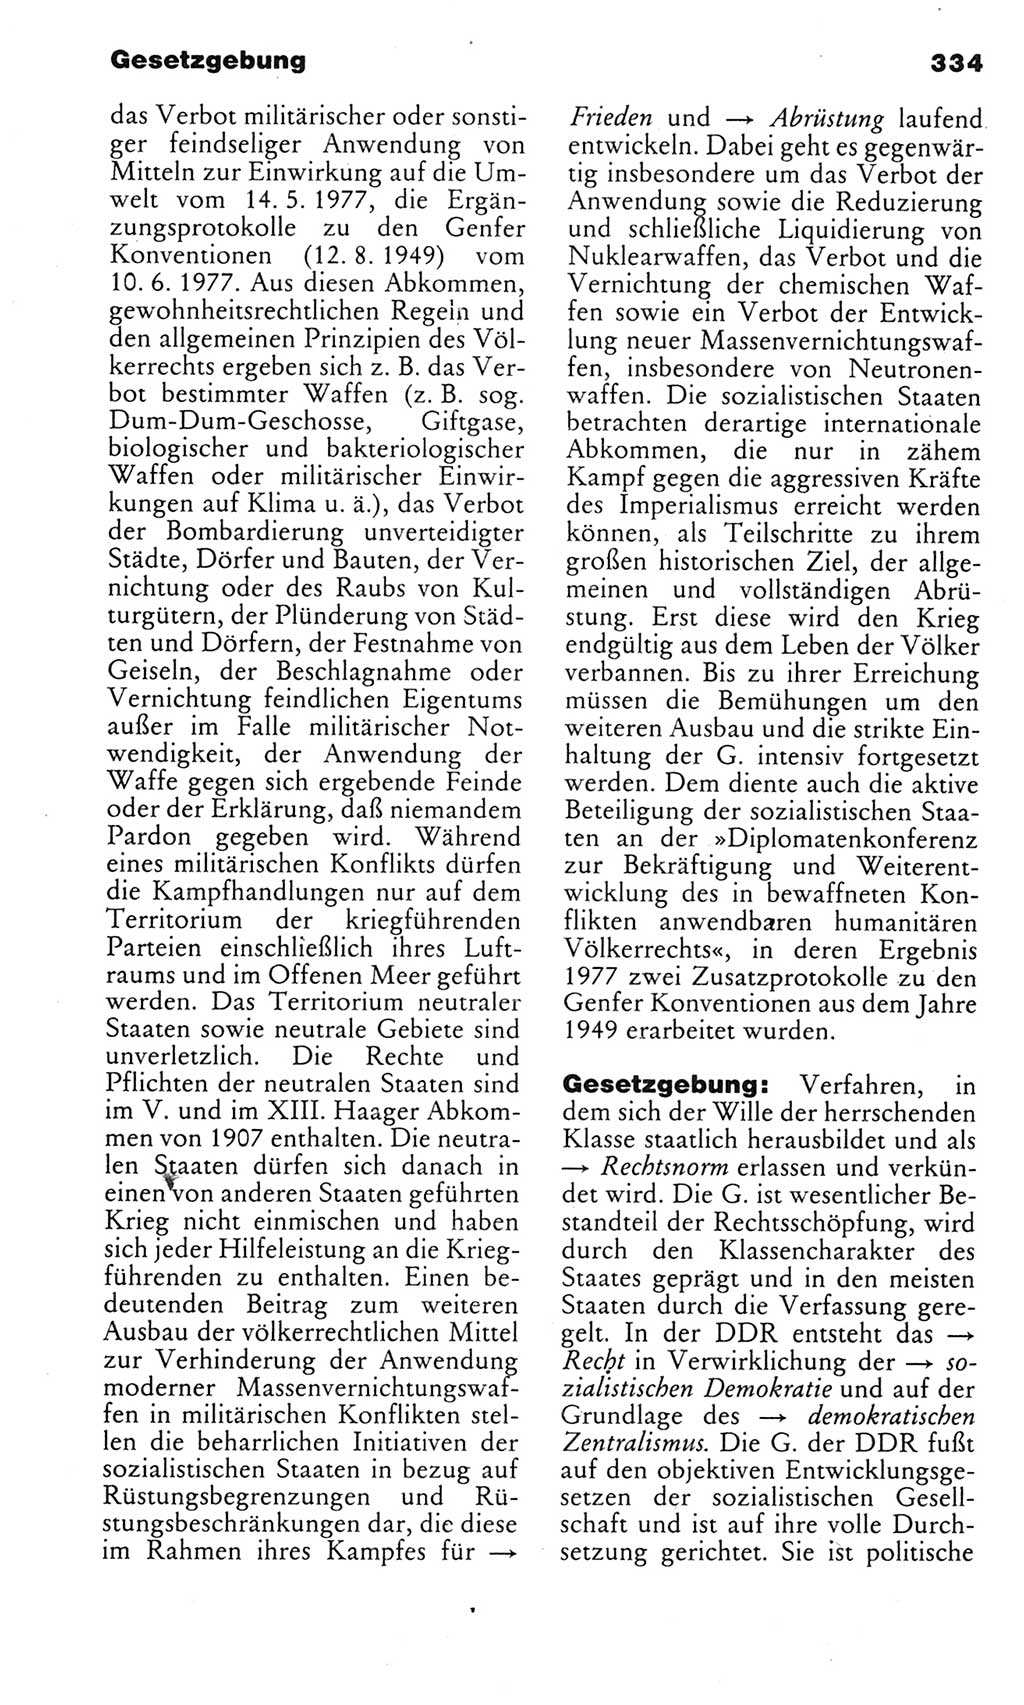 Kleines politisches Wörterbuch [Deutsche Demokratische Republik (DDR)] 1983, Seite 334 (Kl. pol. Wb. DDR 1983, S. 334)